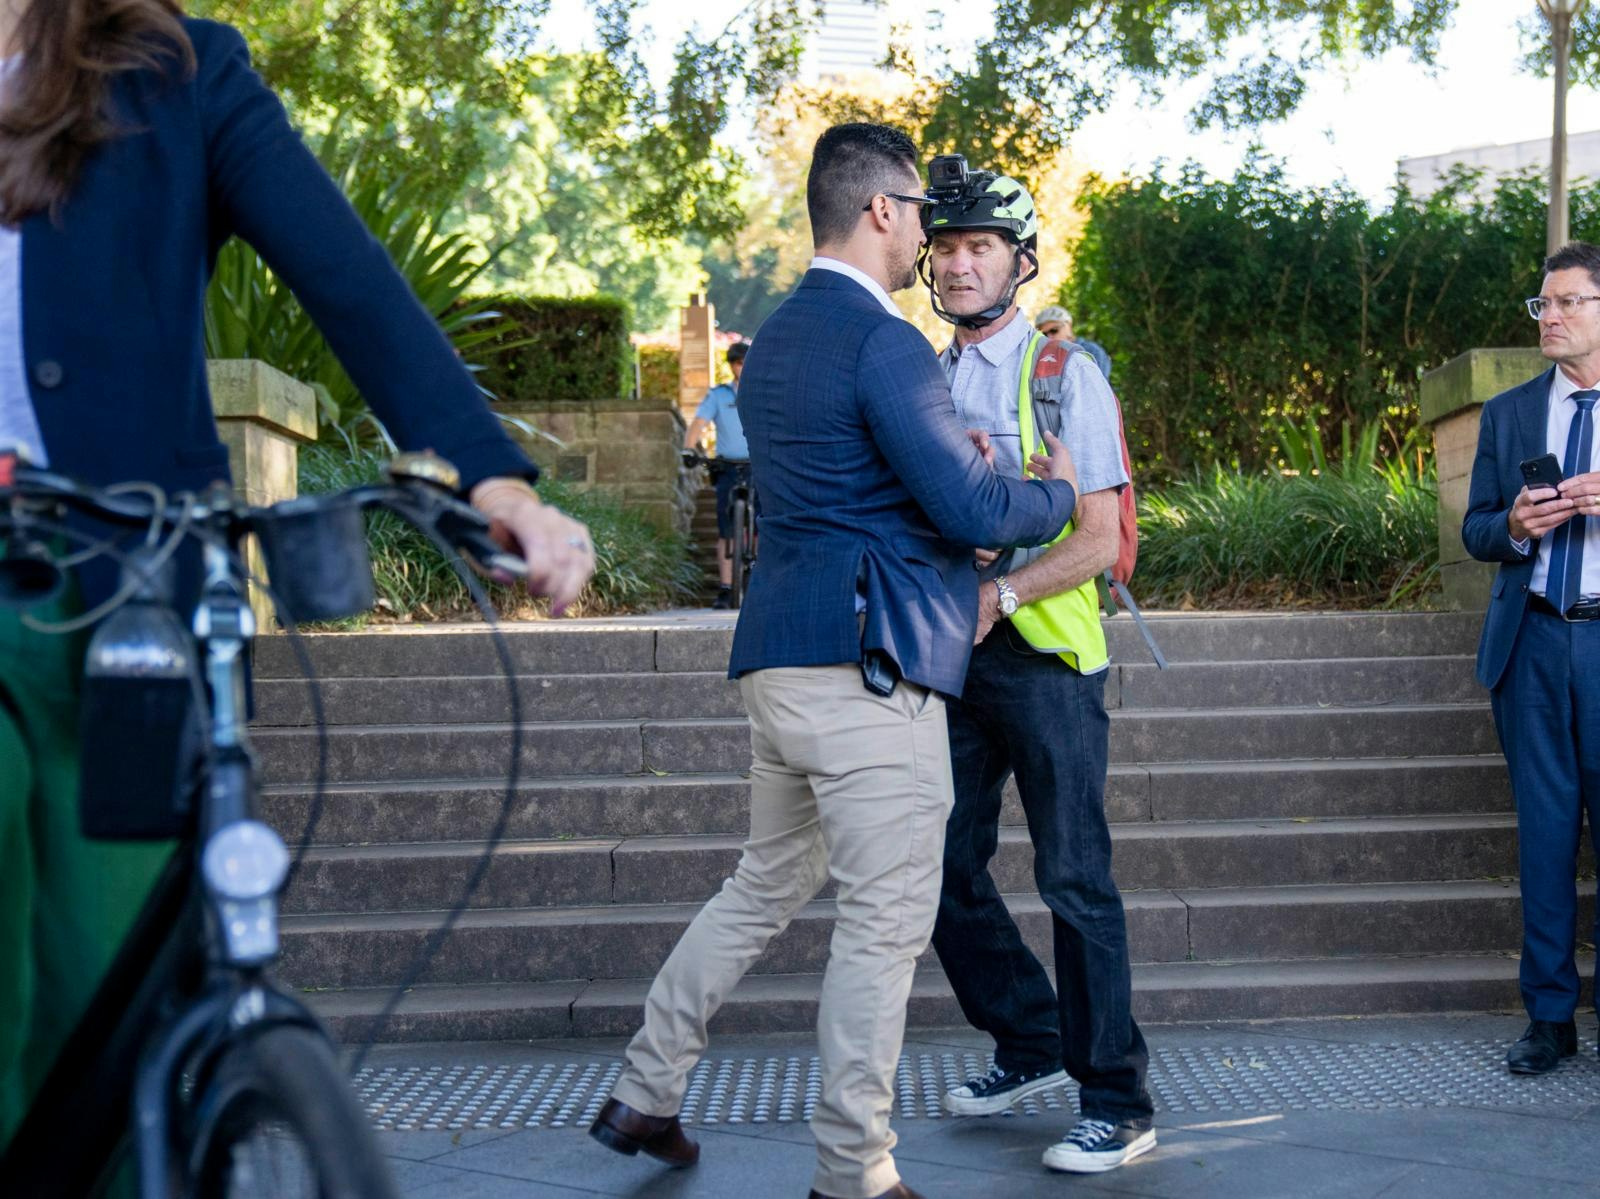 En mand kom lidt for tæt på kronprinsessen inden en cykeltur i Sydney
